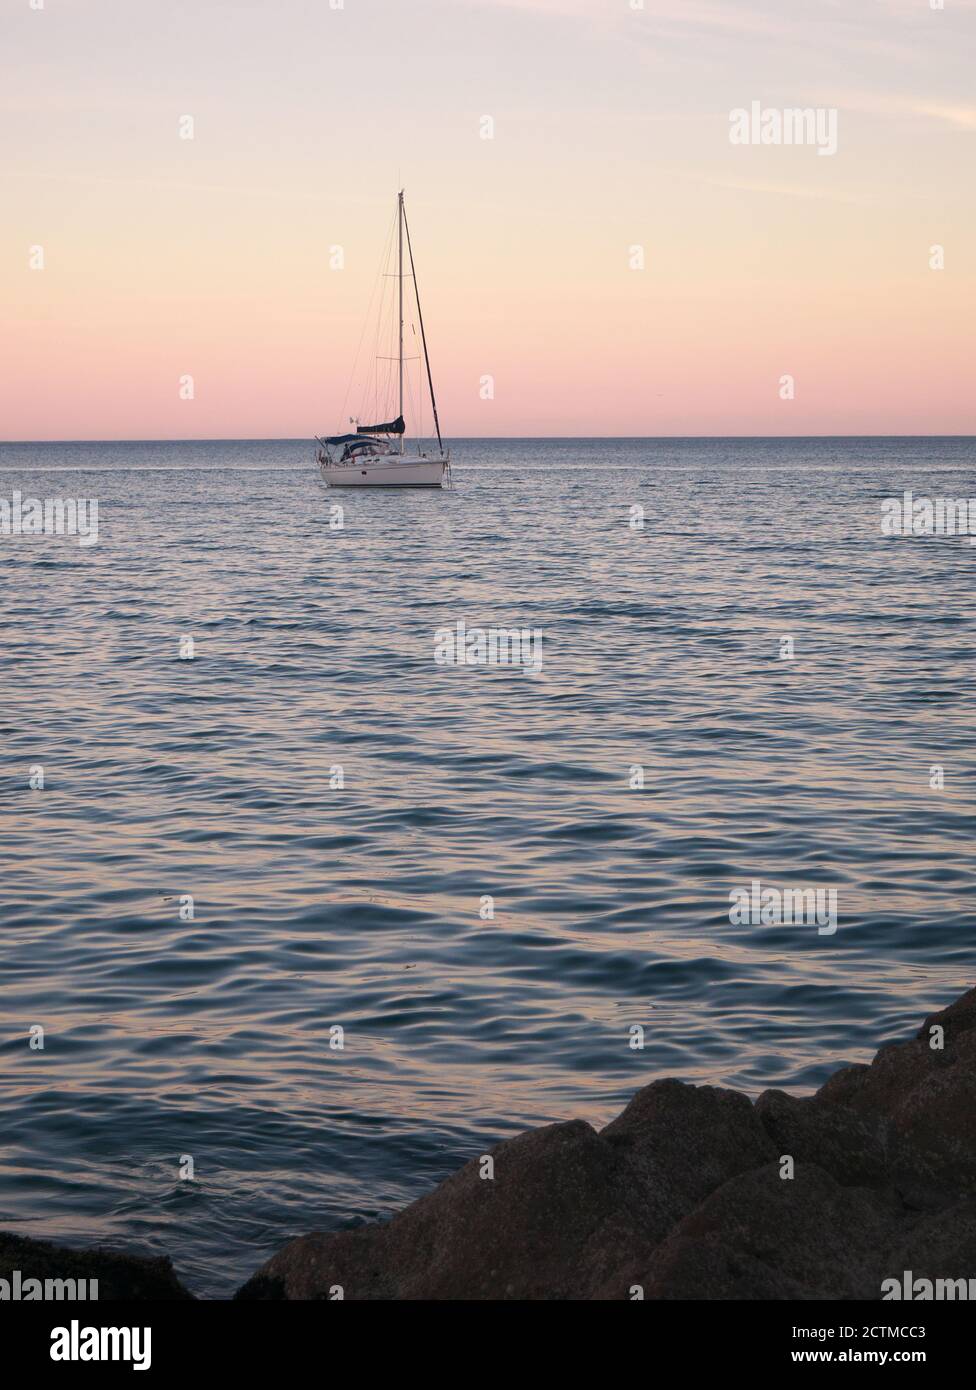 Fotografia di una barca a vela che naviga al largo del mare durante il tramonto Foto Stock